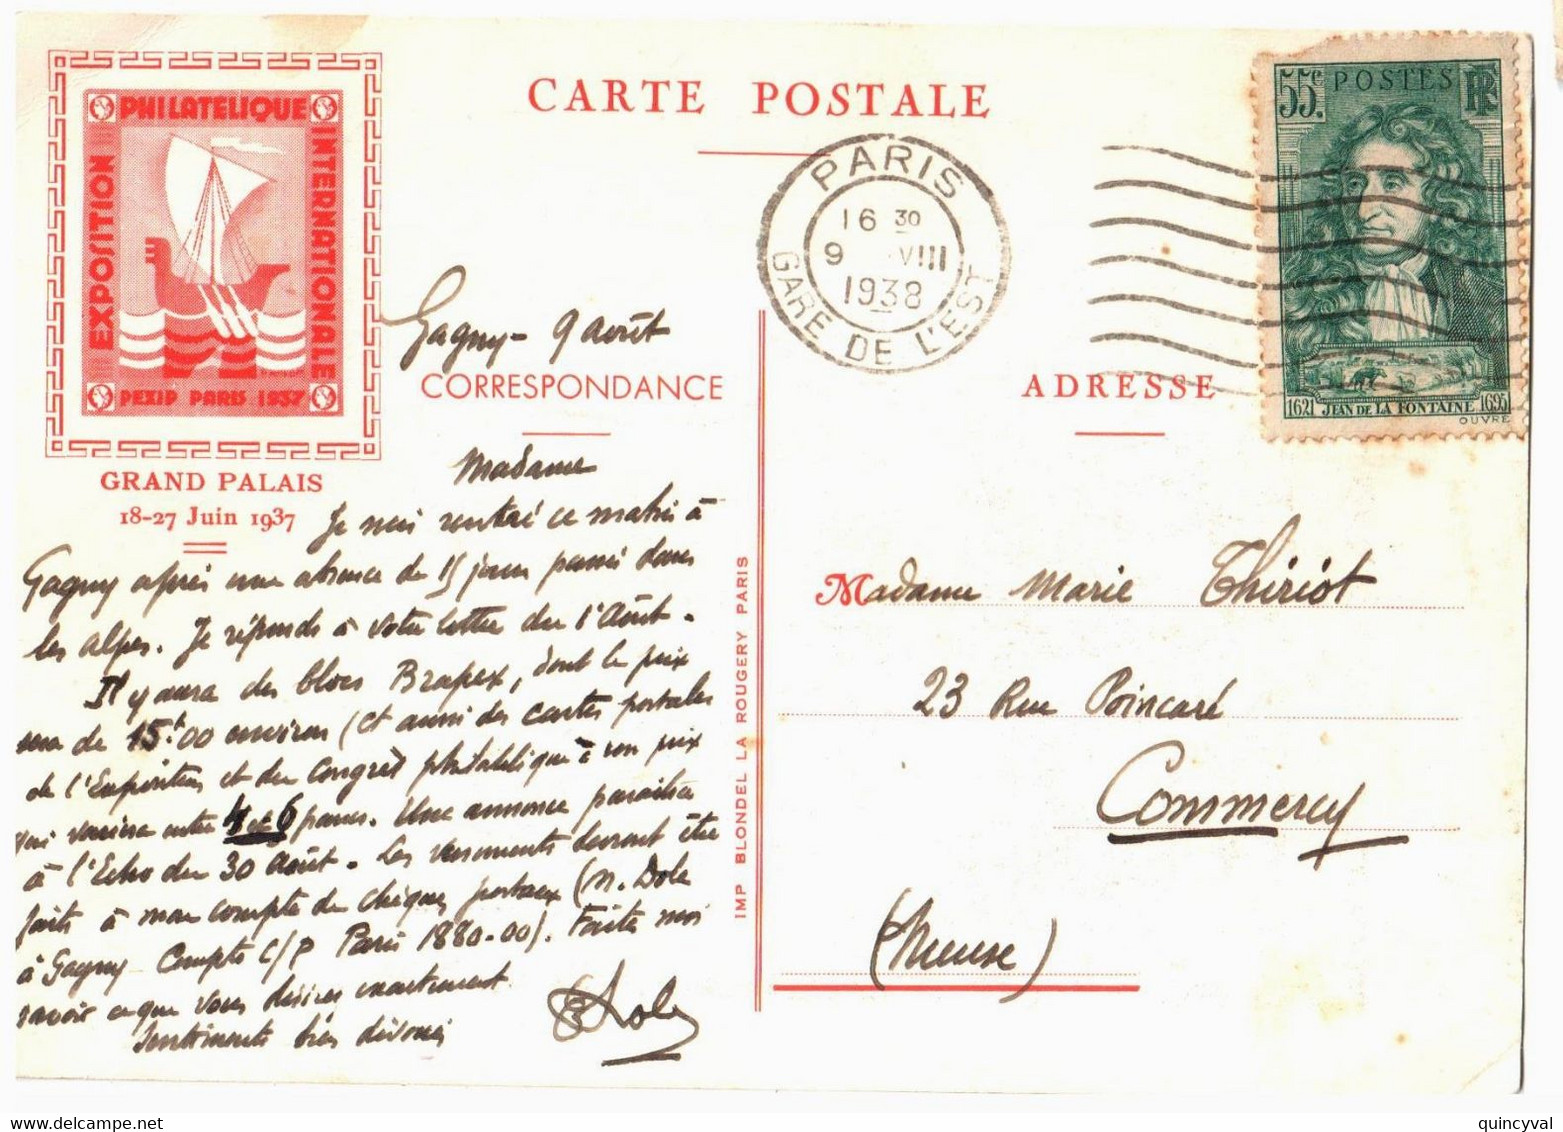 PARIS Gare De L'est Carte Postale PEXIP 1937 55c La Fontaine Défaut Yv 397  Ob 1938 Dest Commercy Meuse - Covers & Documents